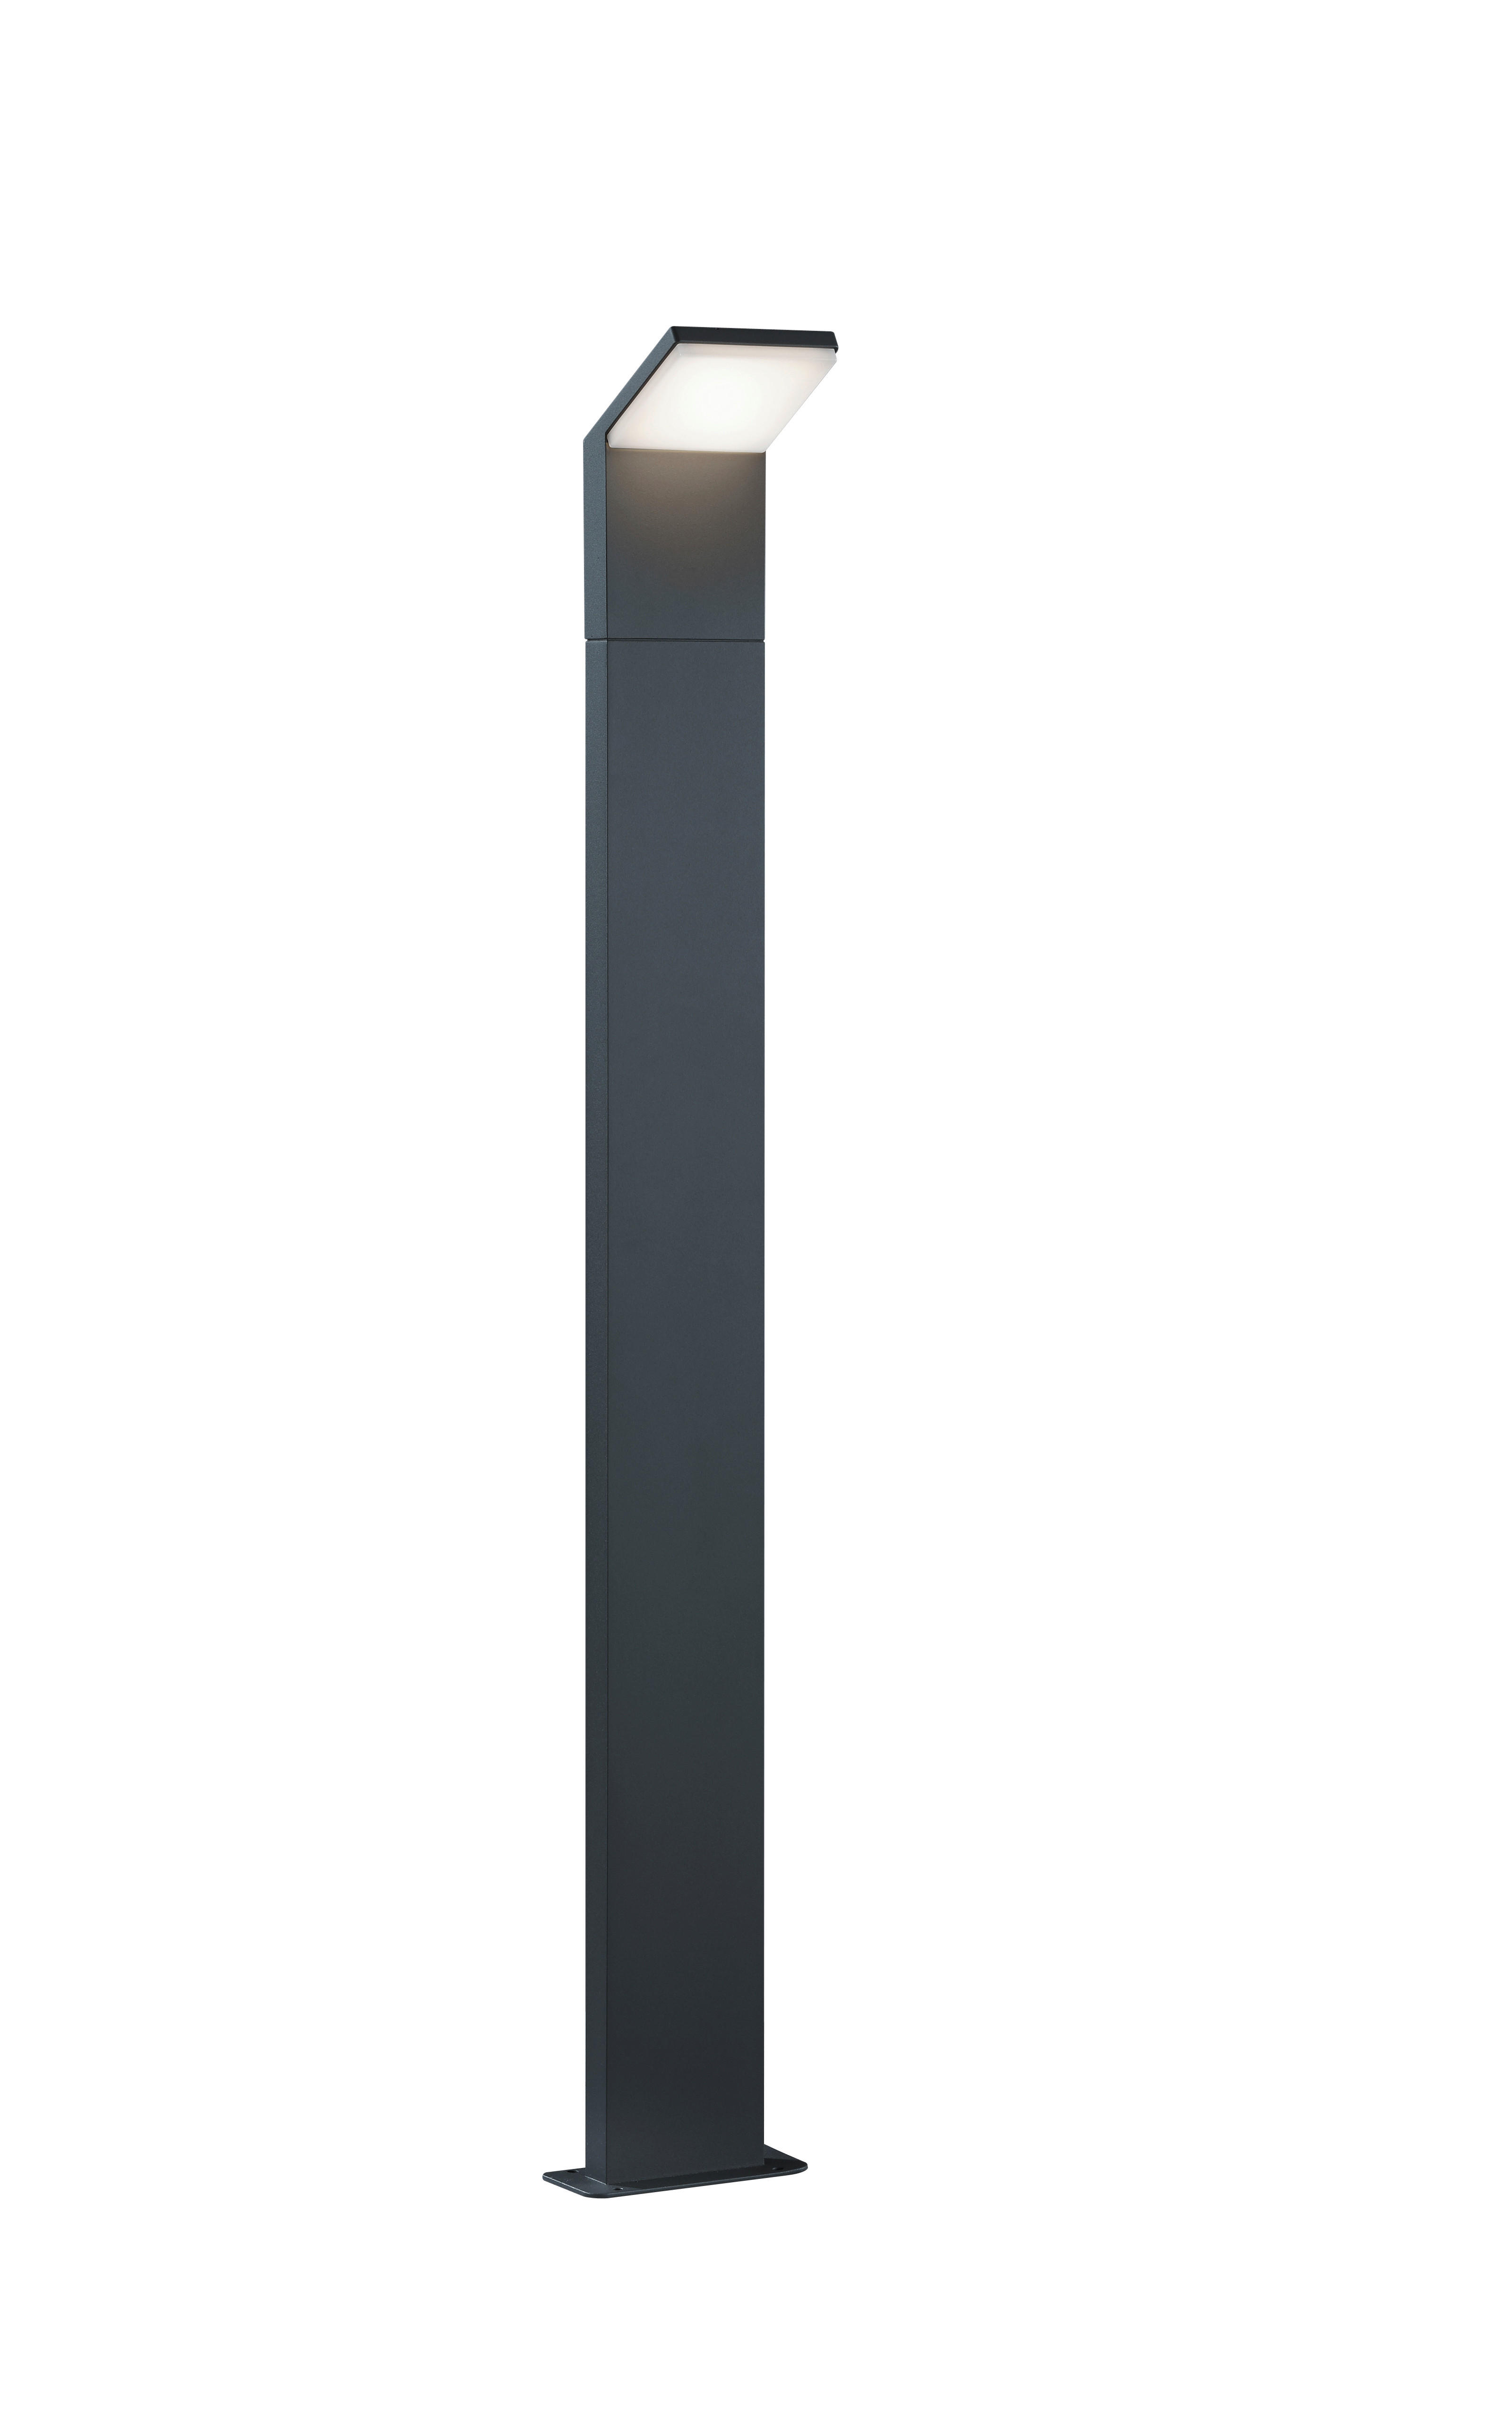 WEGELEUCHTE 14/100/12,5 cm   - Anthrazit, Design, Metall (14/100/12,5cm) - Trio Leuchten